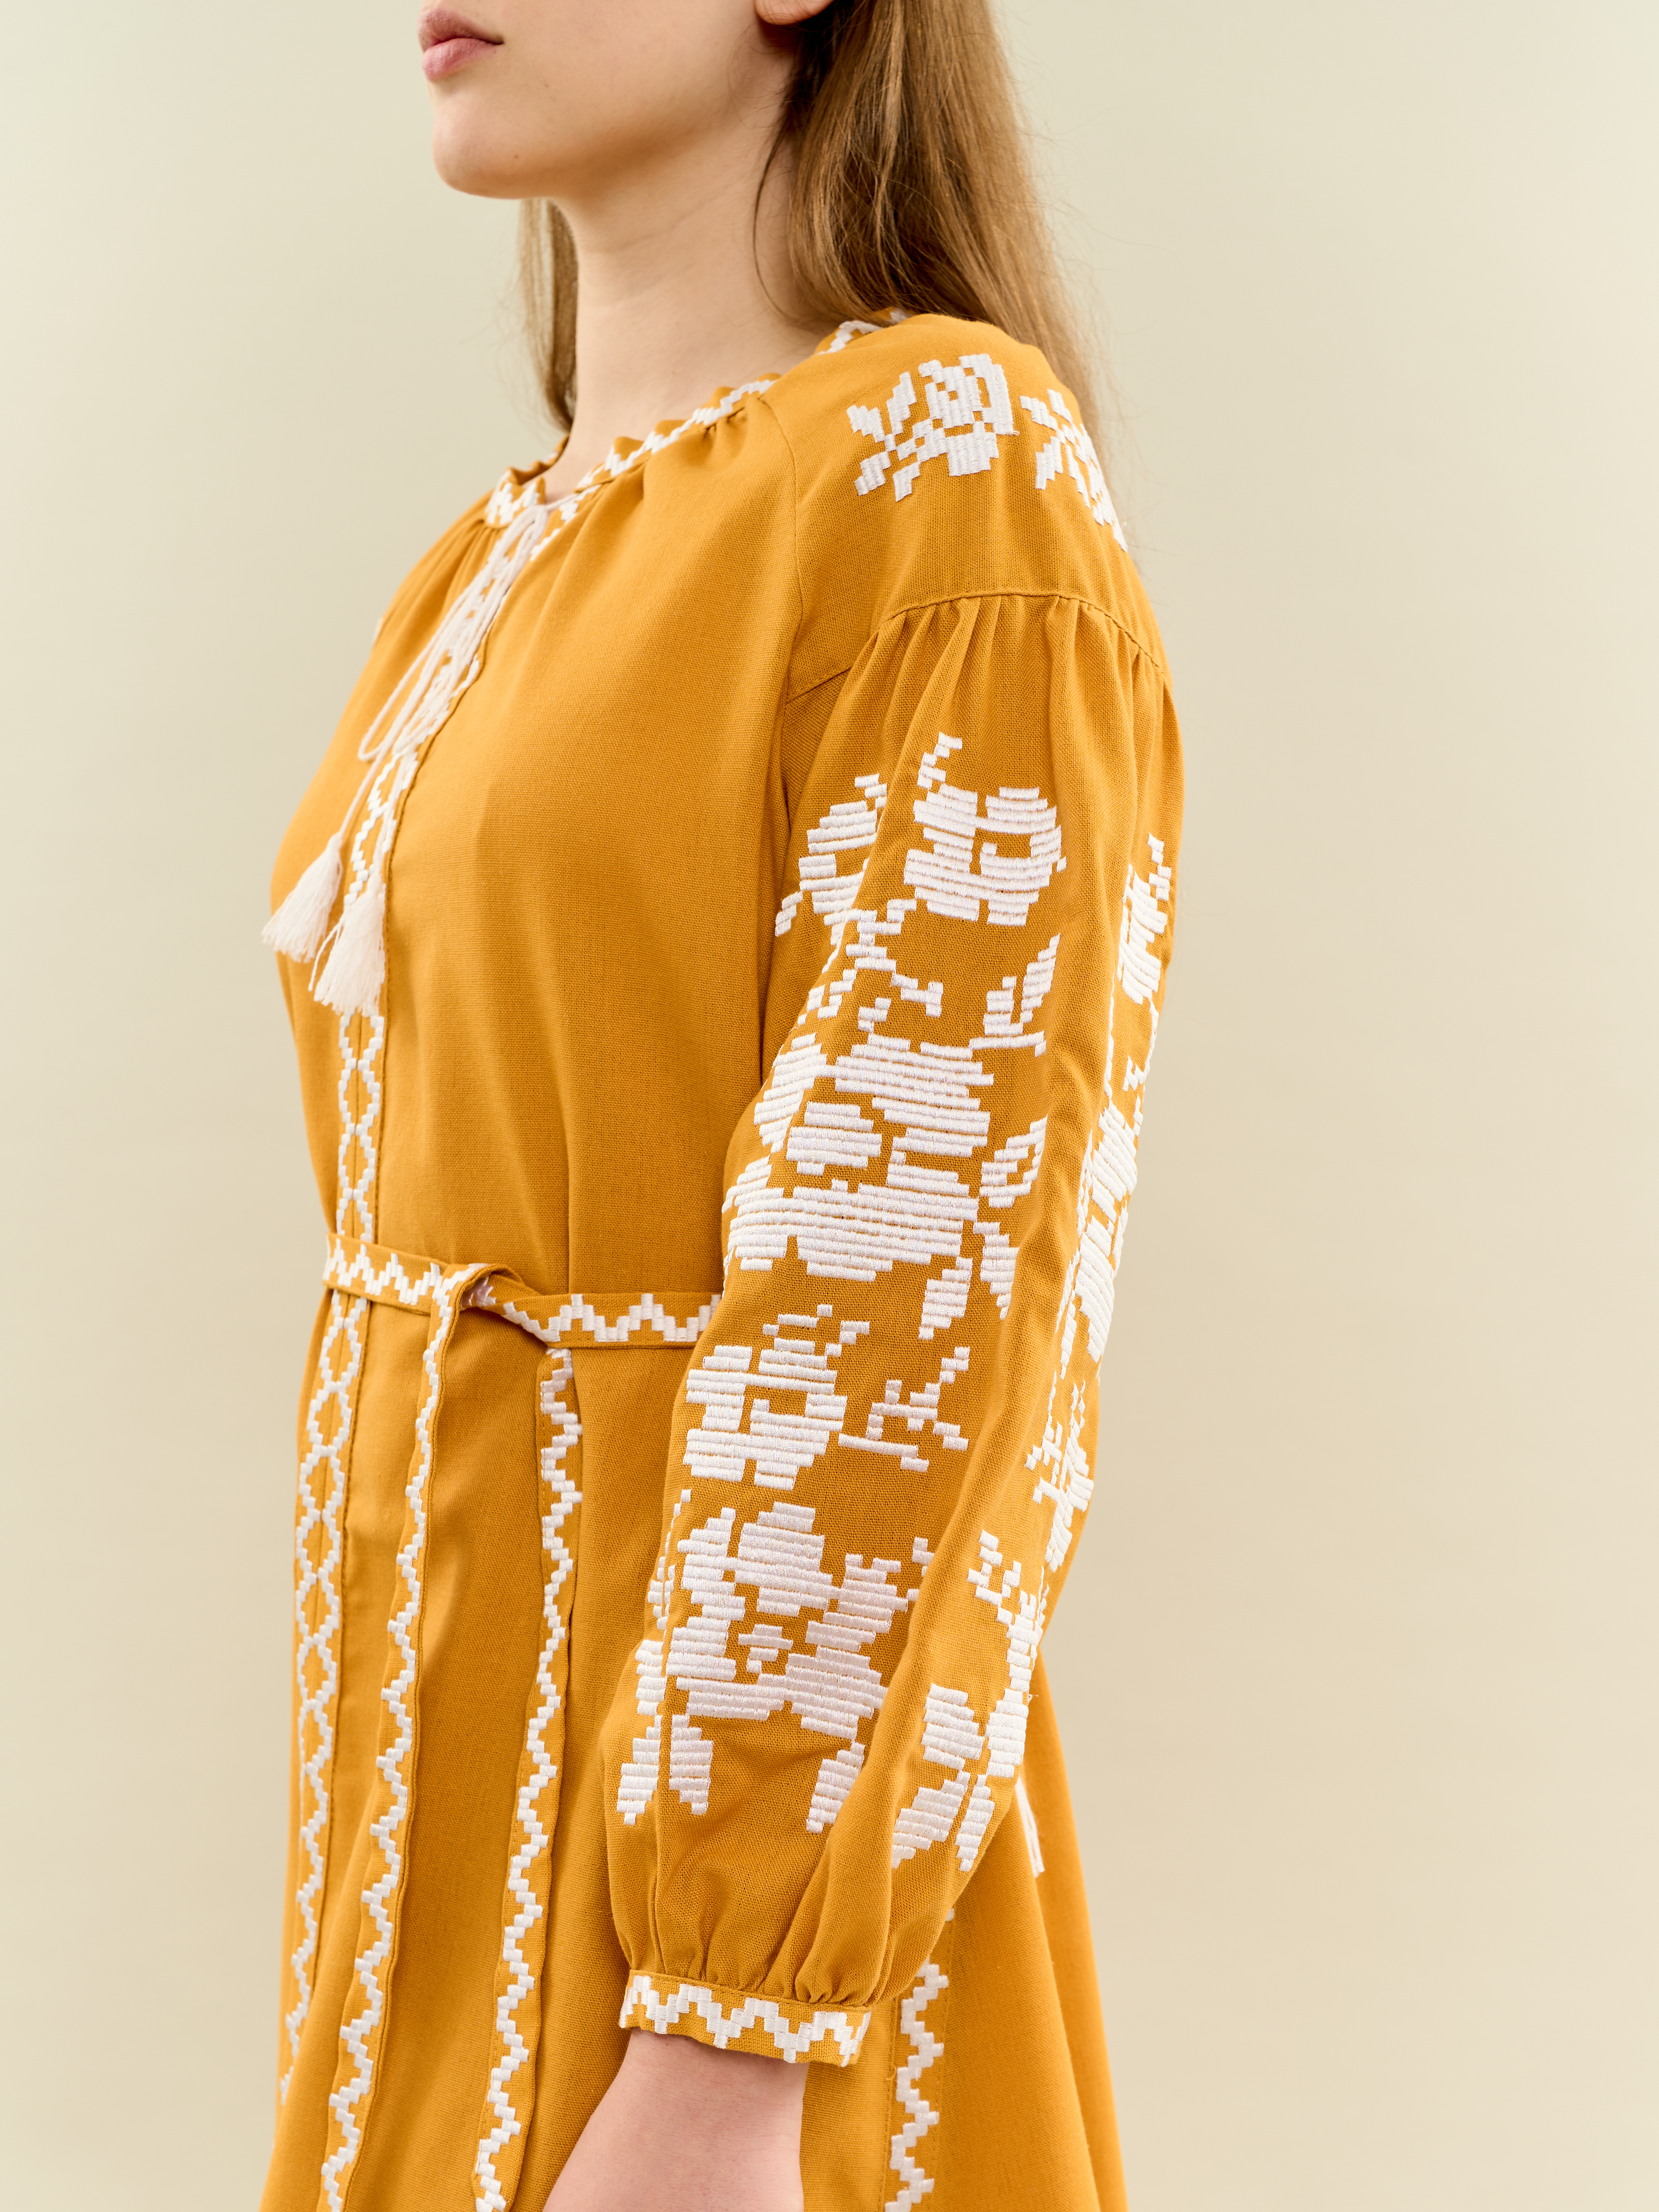 Картинка Вишита сукня жовта з білим орнаментом